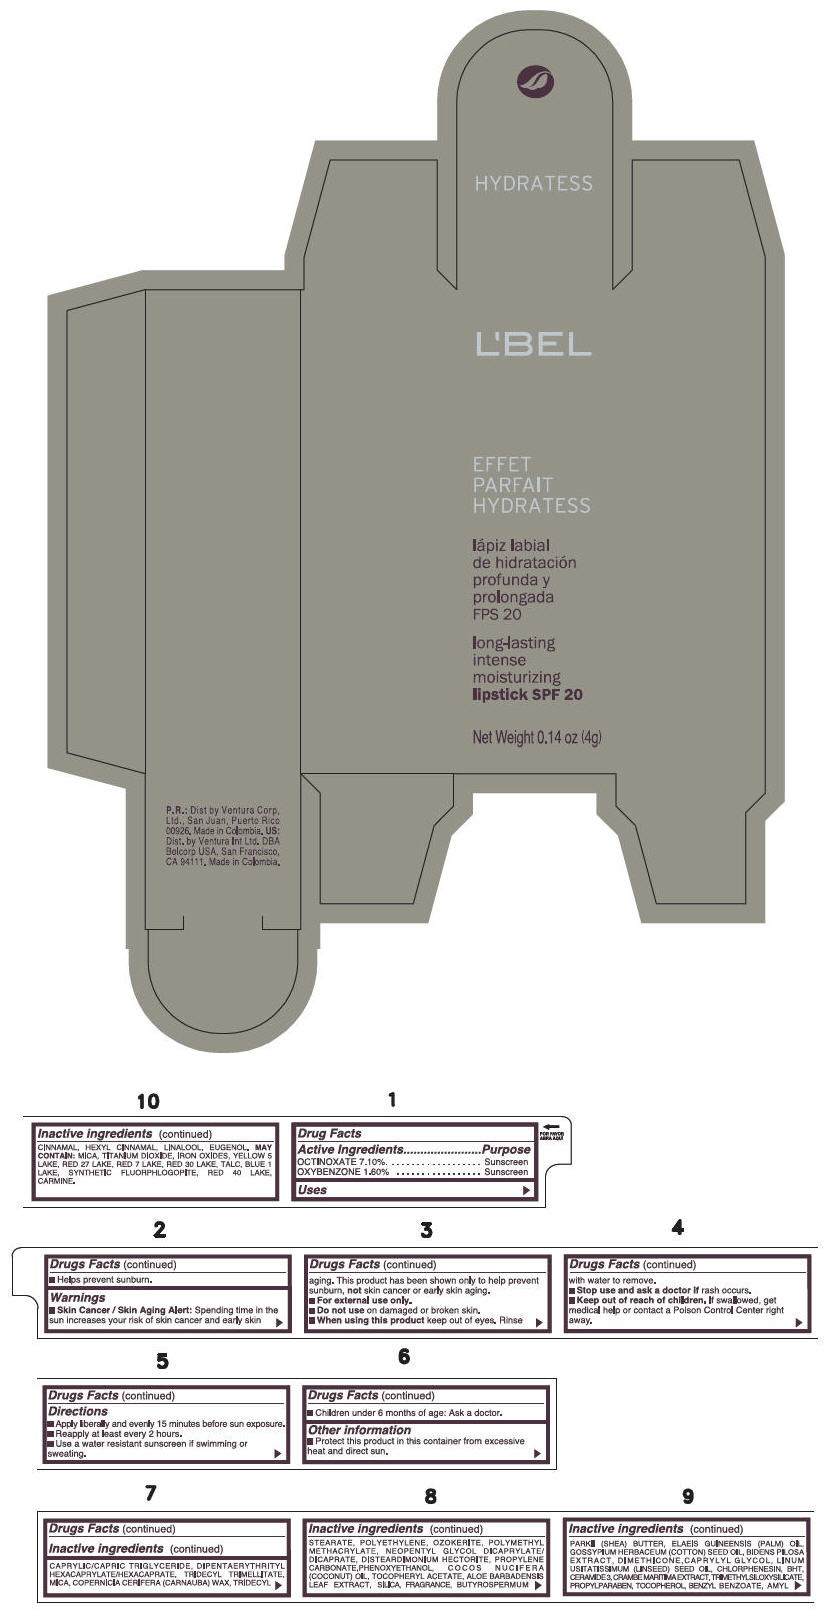 PRINCIPAL DISPLAY PANEL - 4 g Tube Box - (ALMOND) - BROWN